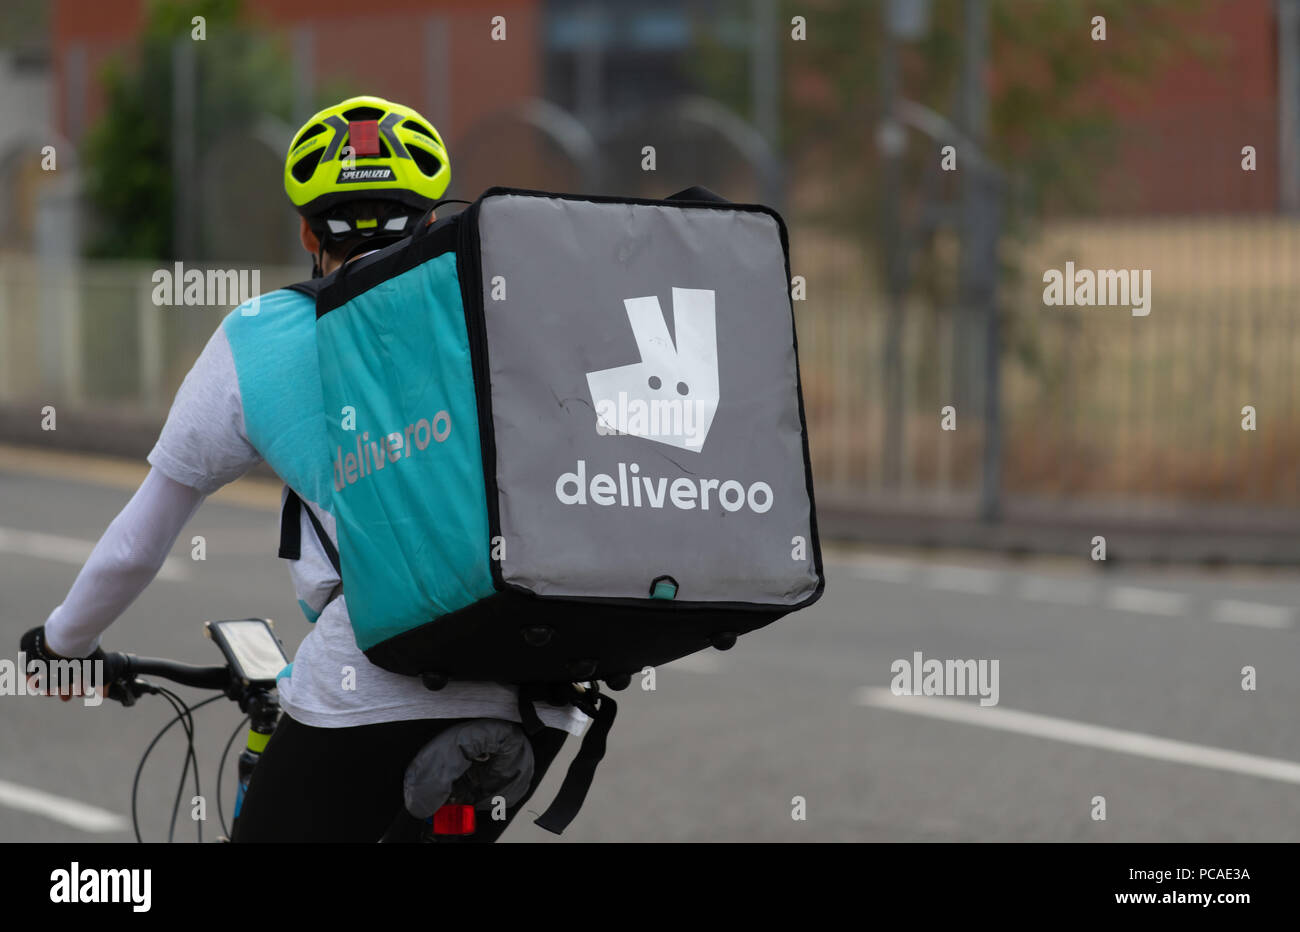 Eine Deliveroo fast food Anlieferung Treiber auf einem Fahrrad in Cardiff, Wales, UK gesehen. Stockfoto